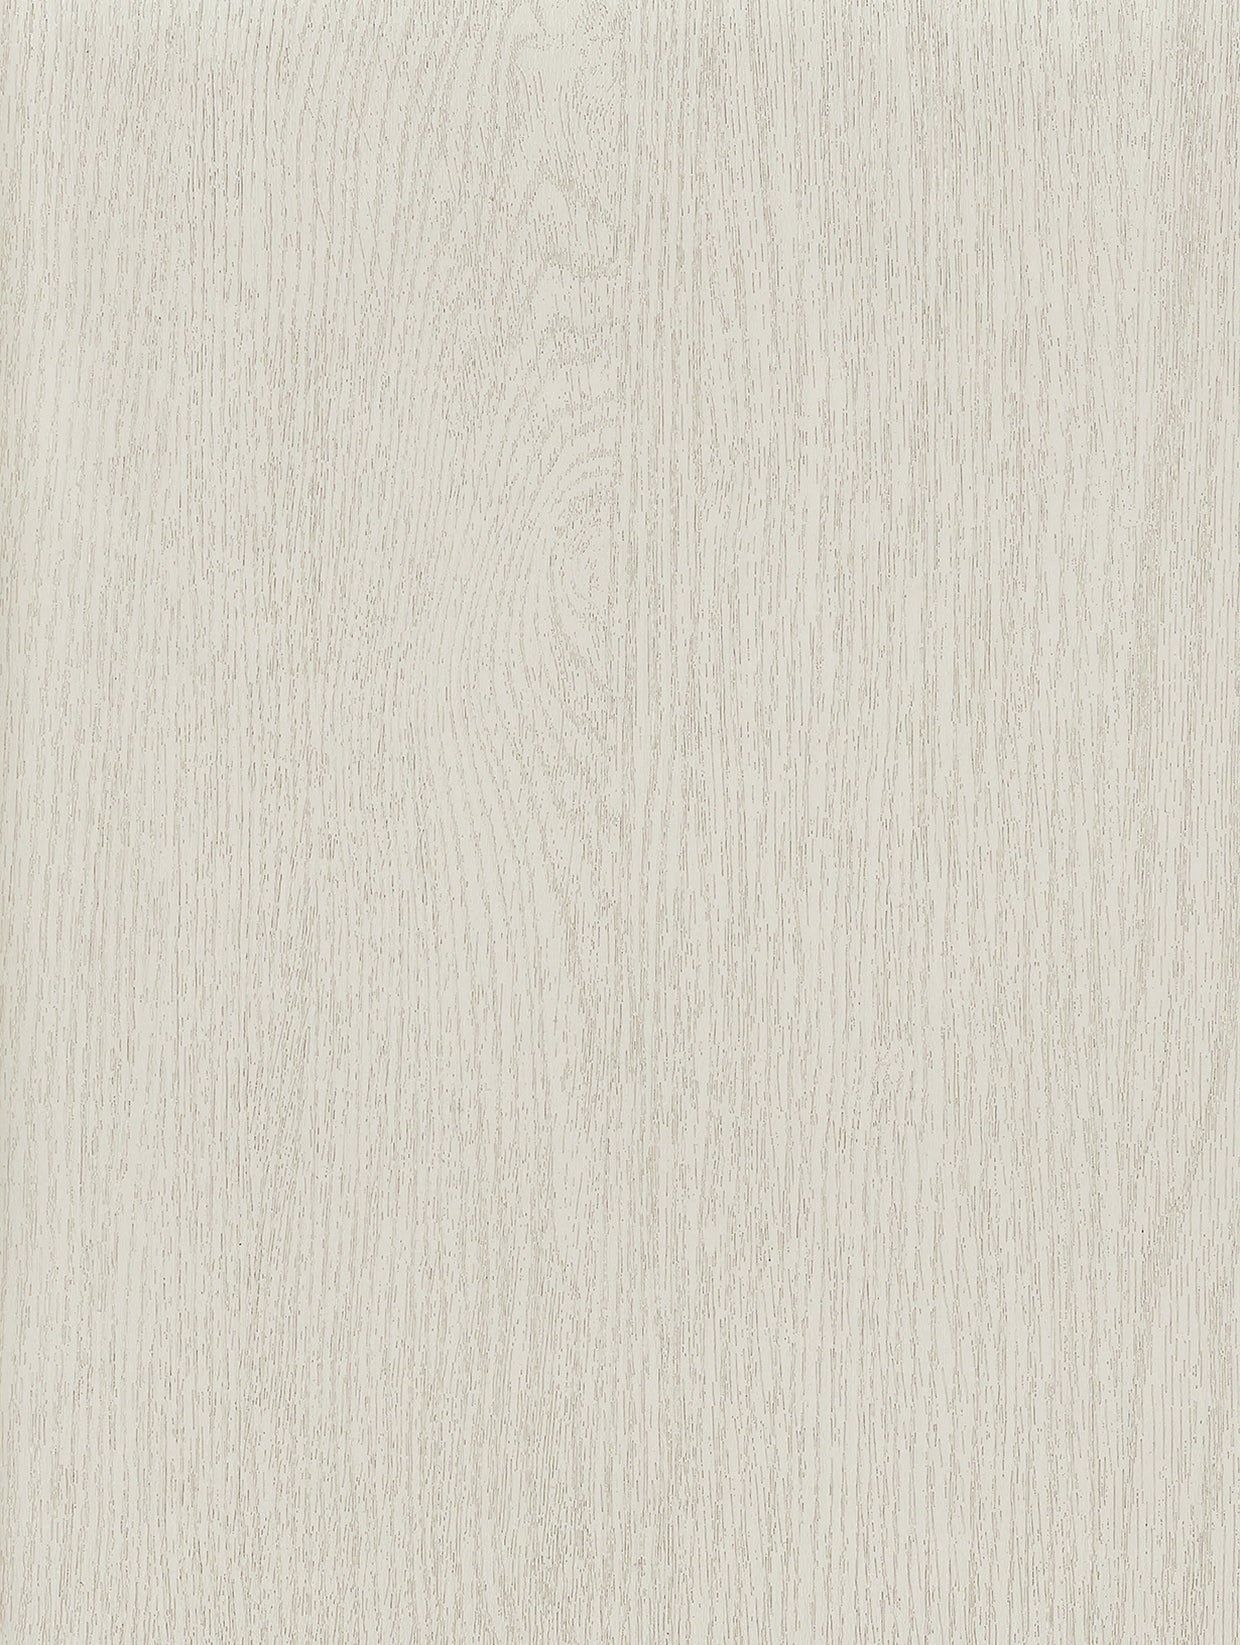 Met hout geschilderd prestige | Houtdecor geschilderd getextureerde meubelfolie zelfklevend behang vinylfolie voor meubelwandplank (100 x 122 cm)